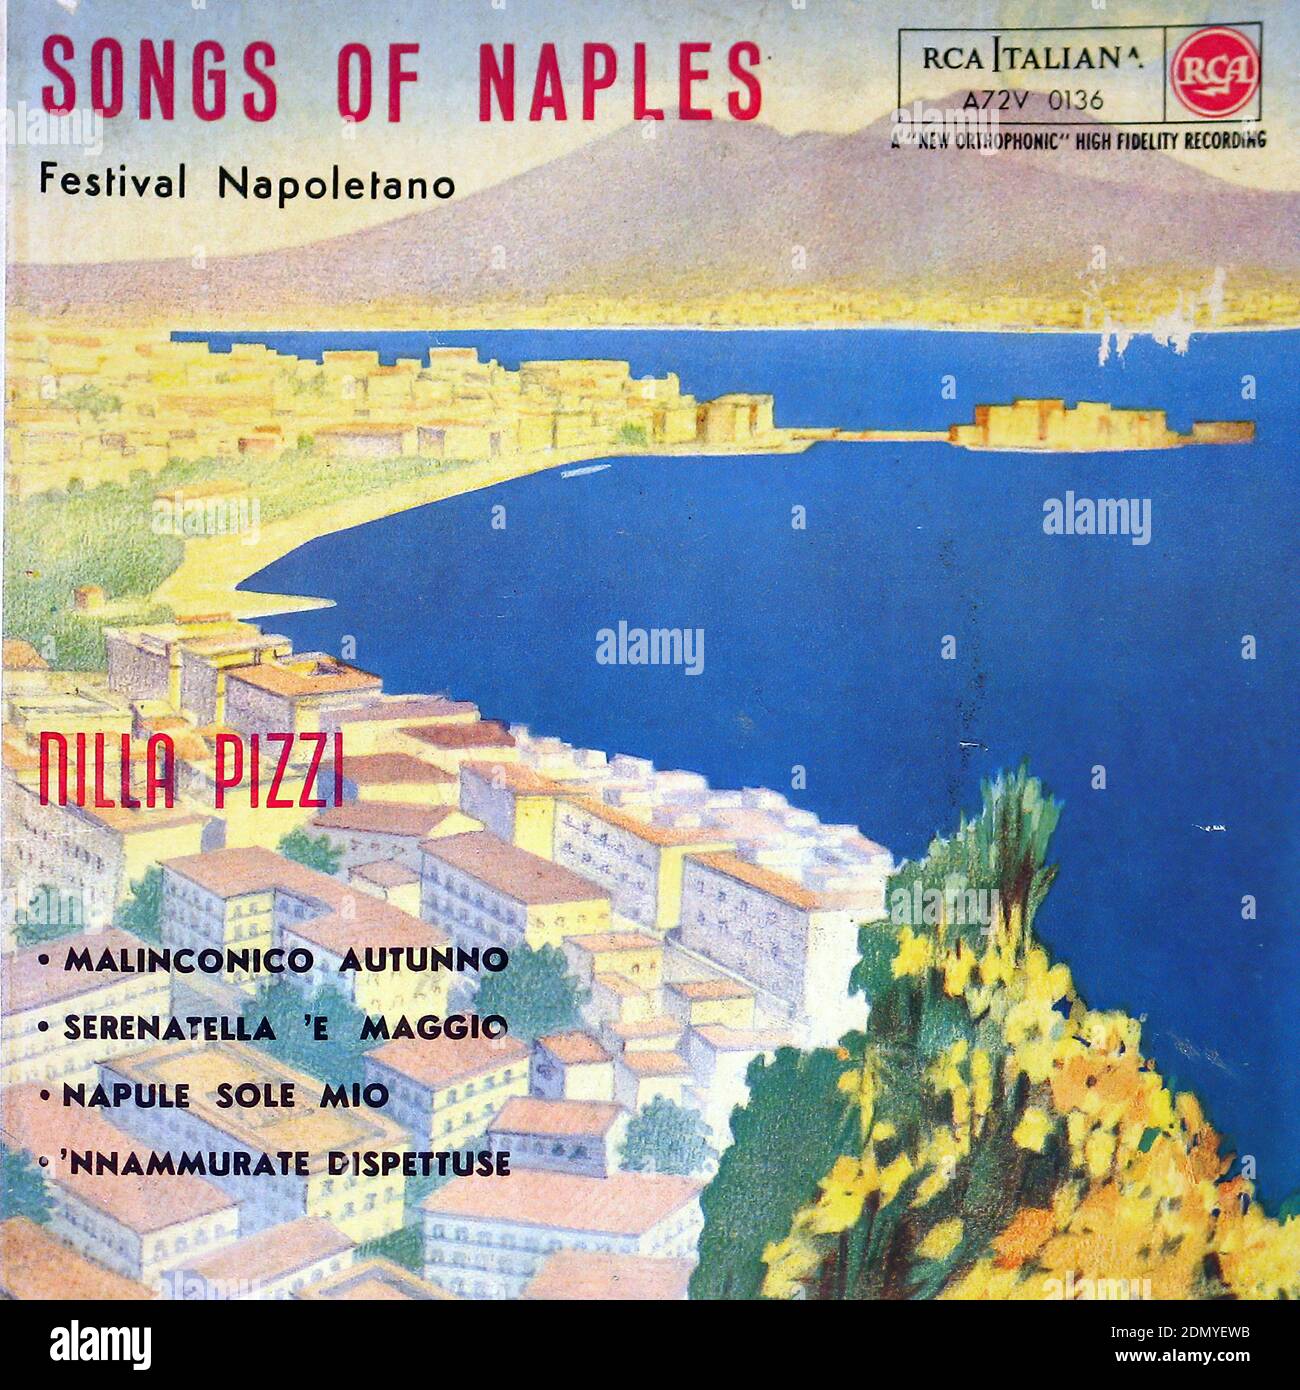 Nilla Pizzi chansons de Naples   Festival Napoletano   Malinconico Autunno   Serenatella 'E Maggio   Napule Sole Mio   Nnammurate Dispettuse - couverture Vintage Vinyl Record Banque D'Images